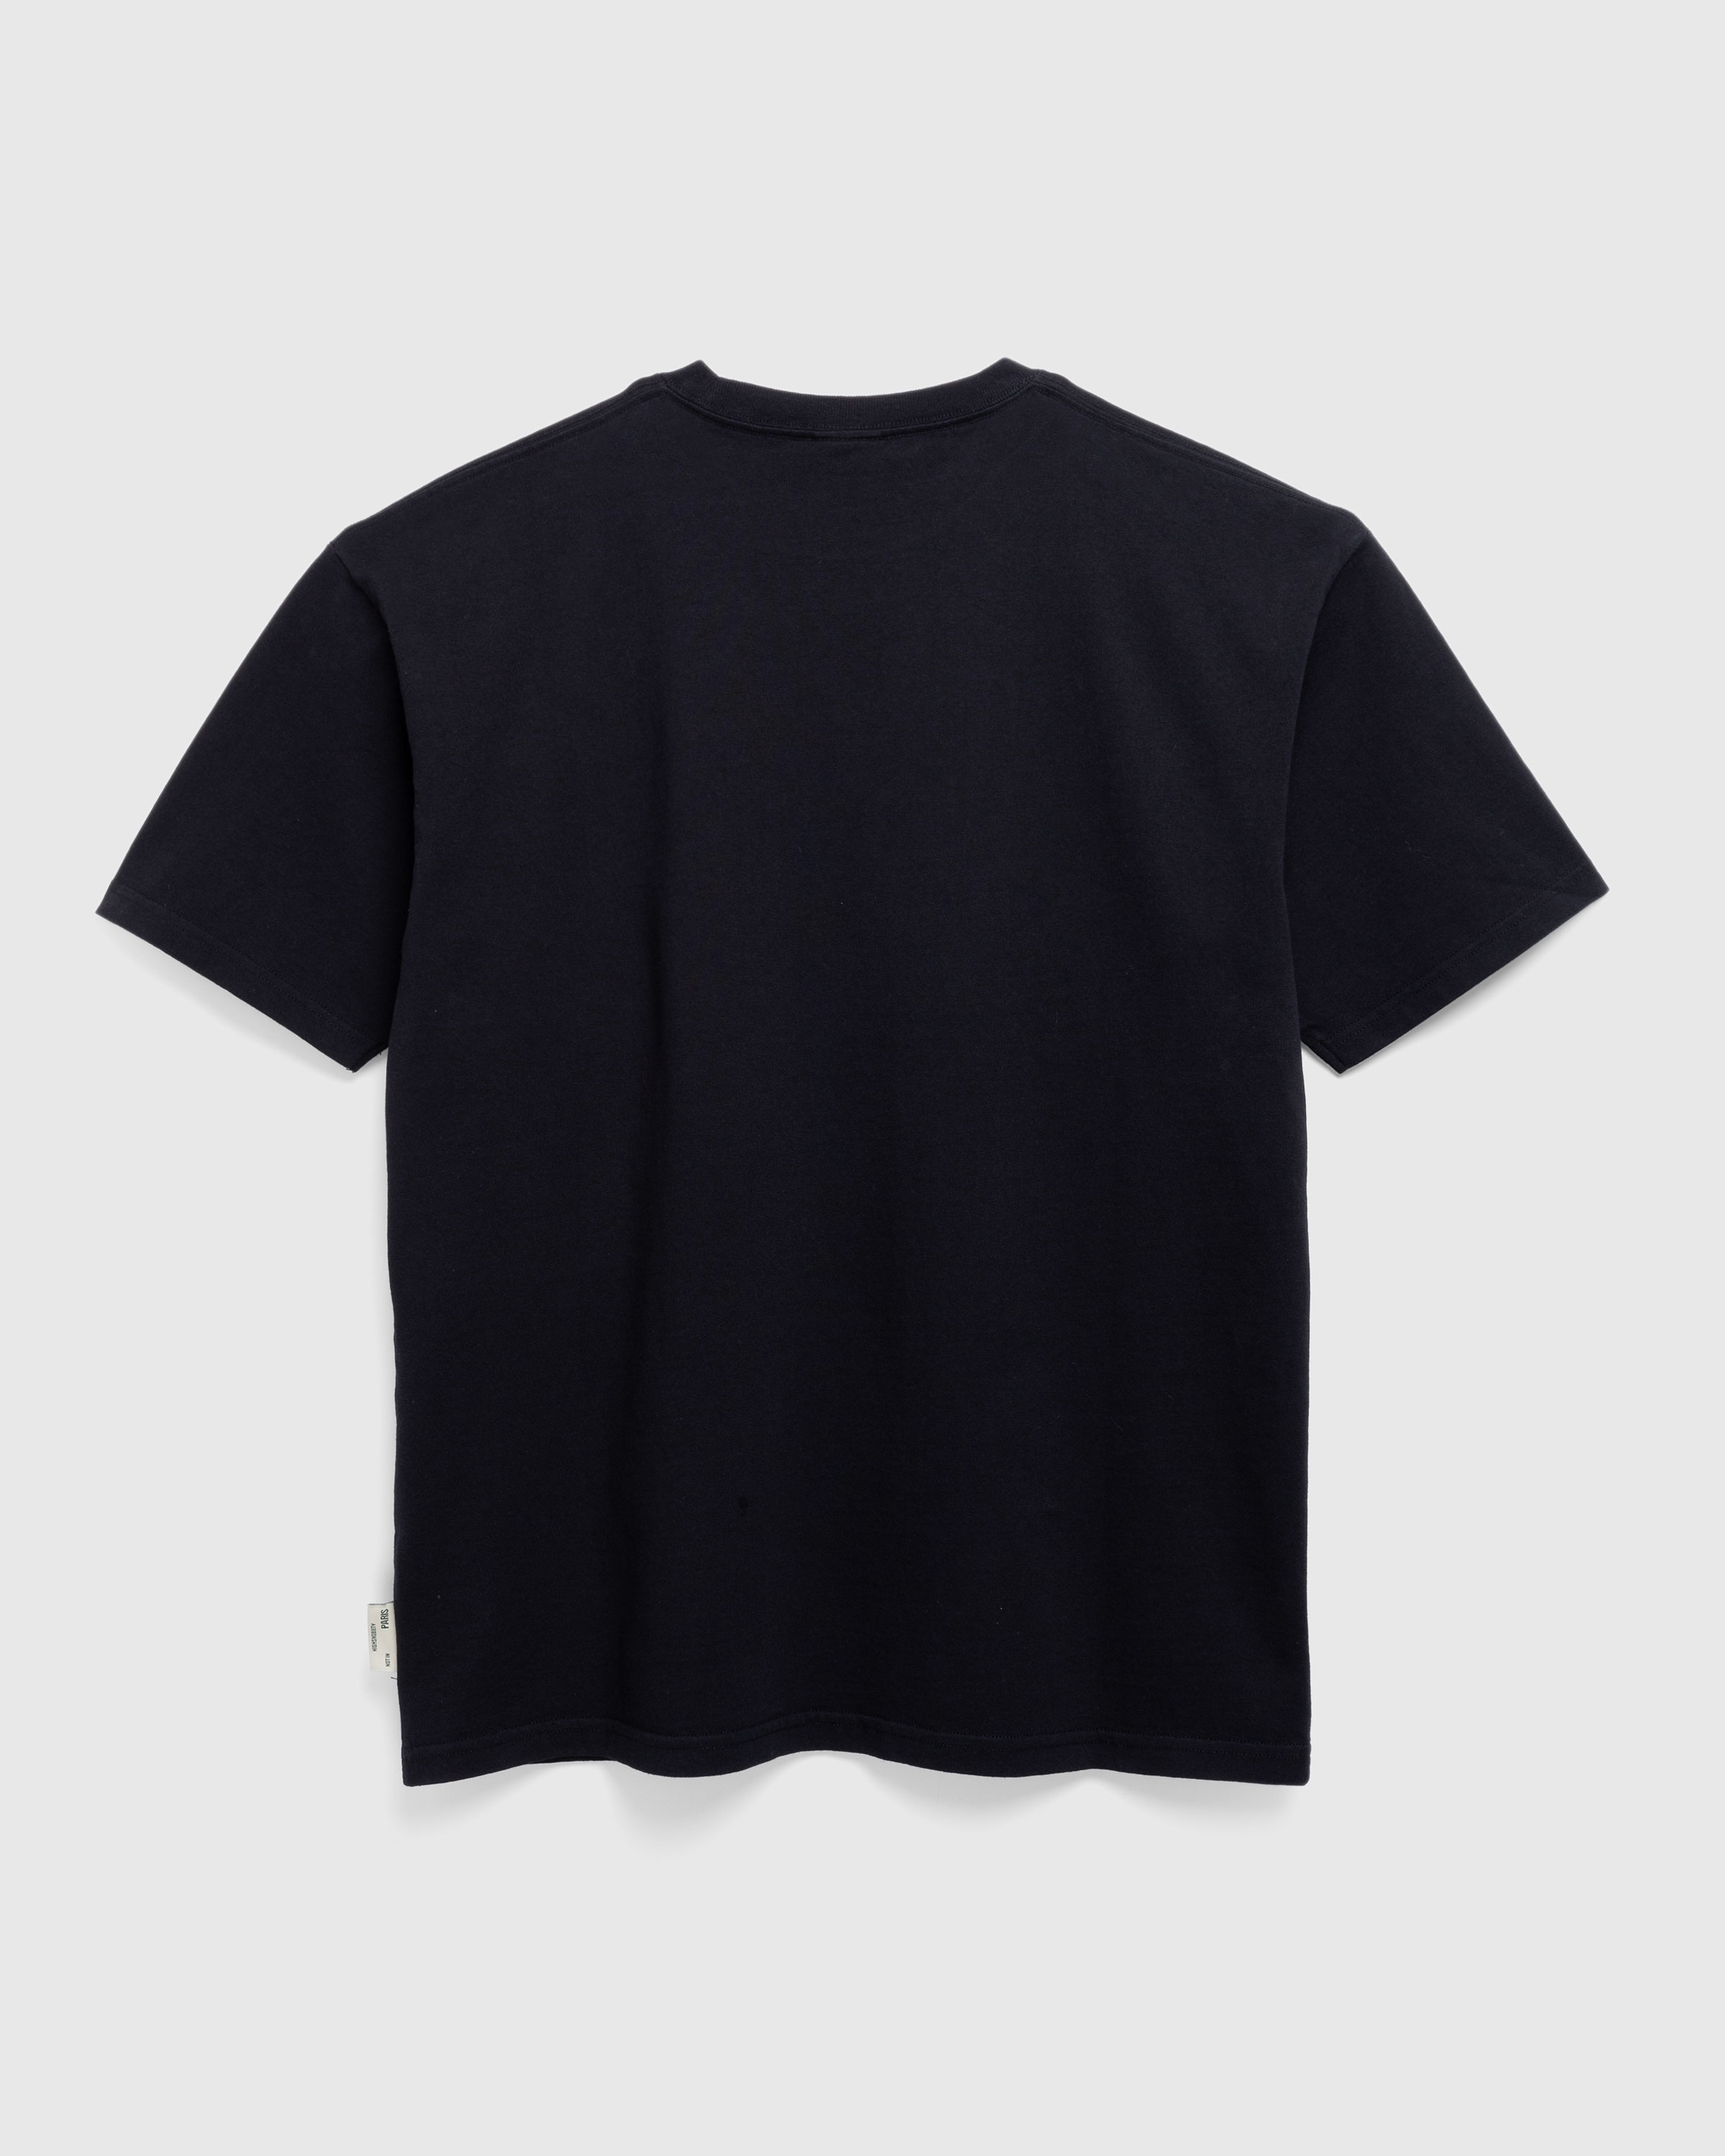 Highsnobiety – I Love Paris T-Shirt Black - T-Shirts - Black - Image 3